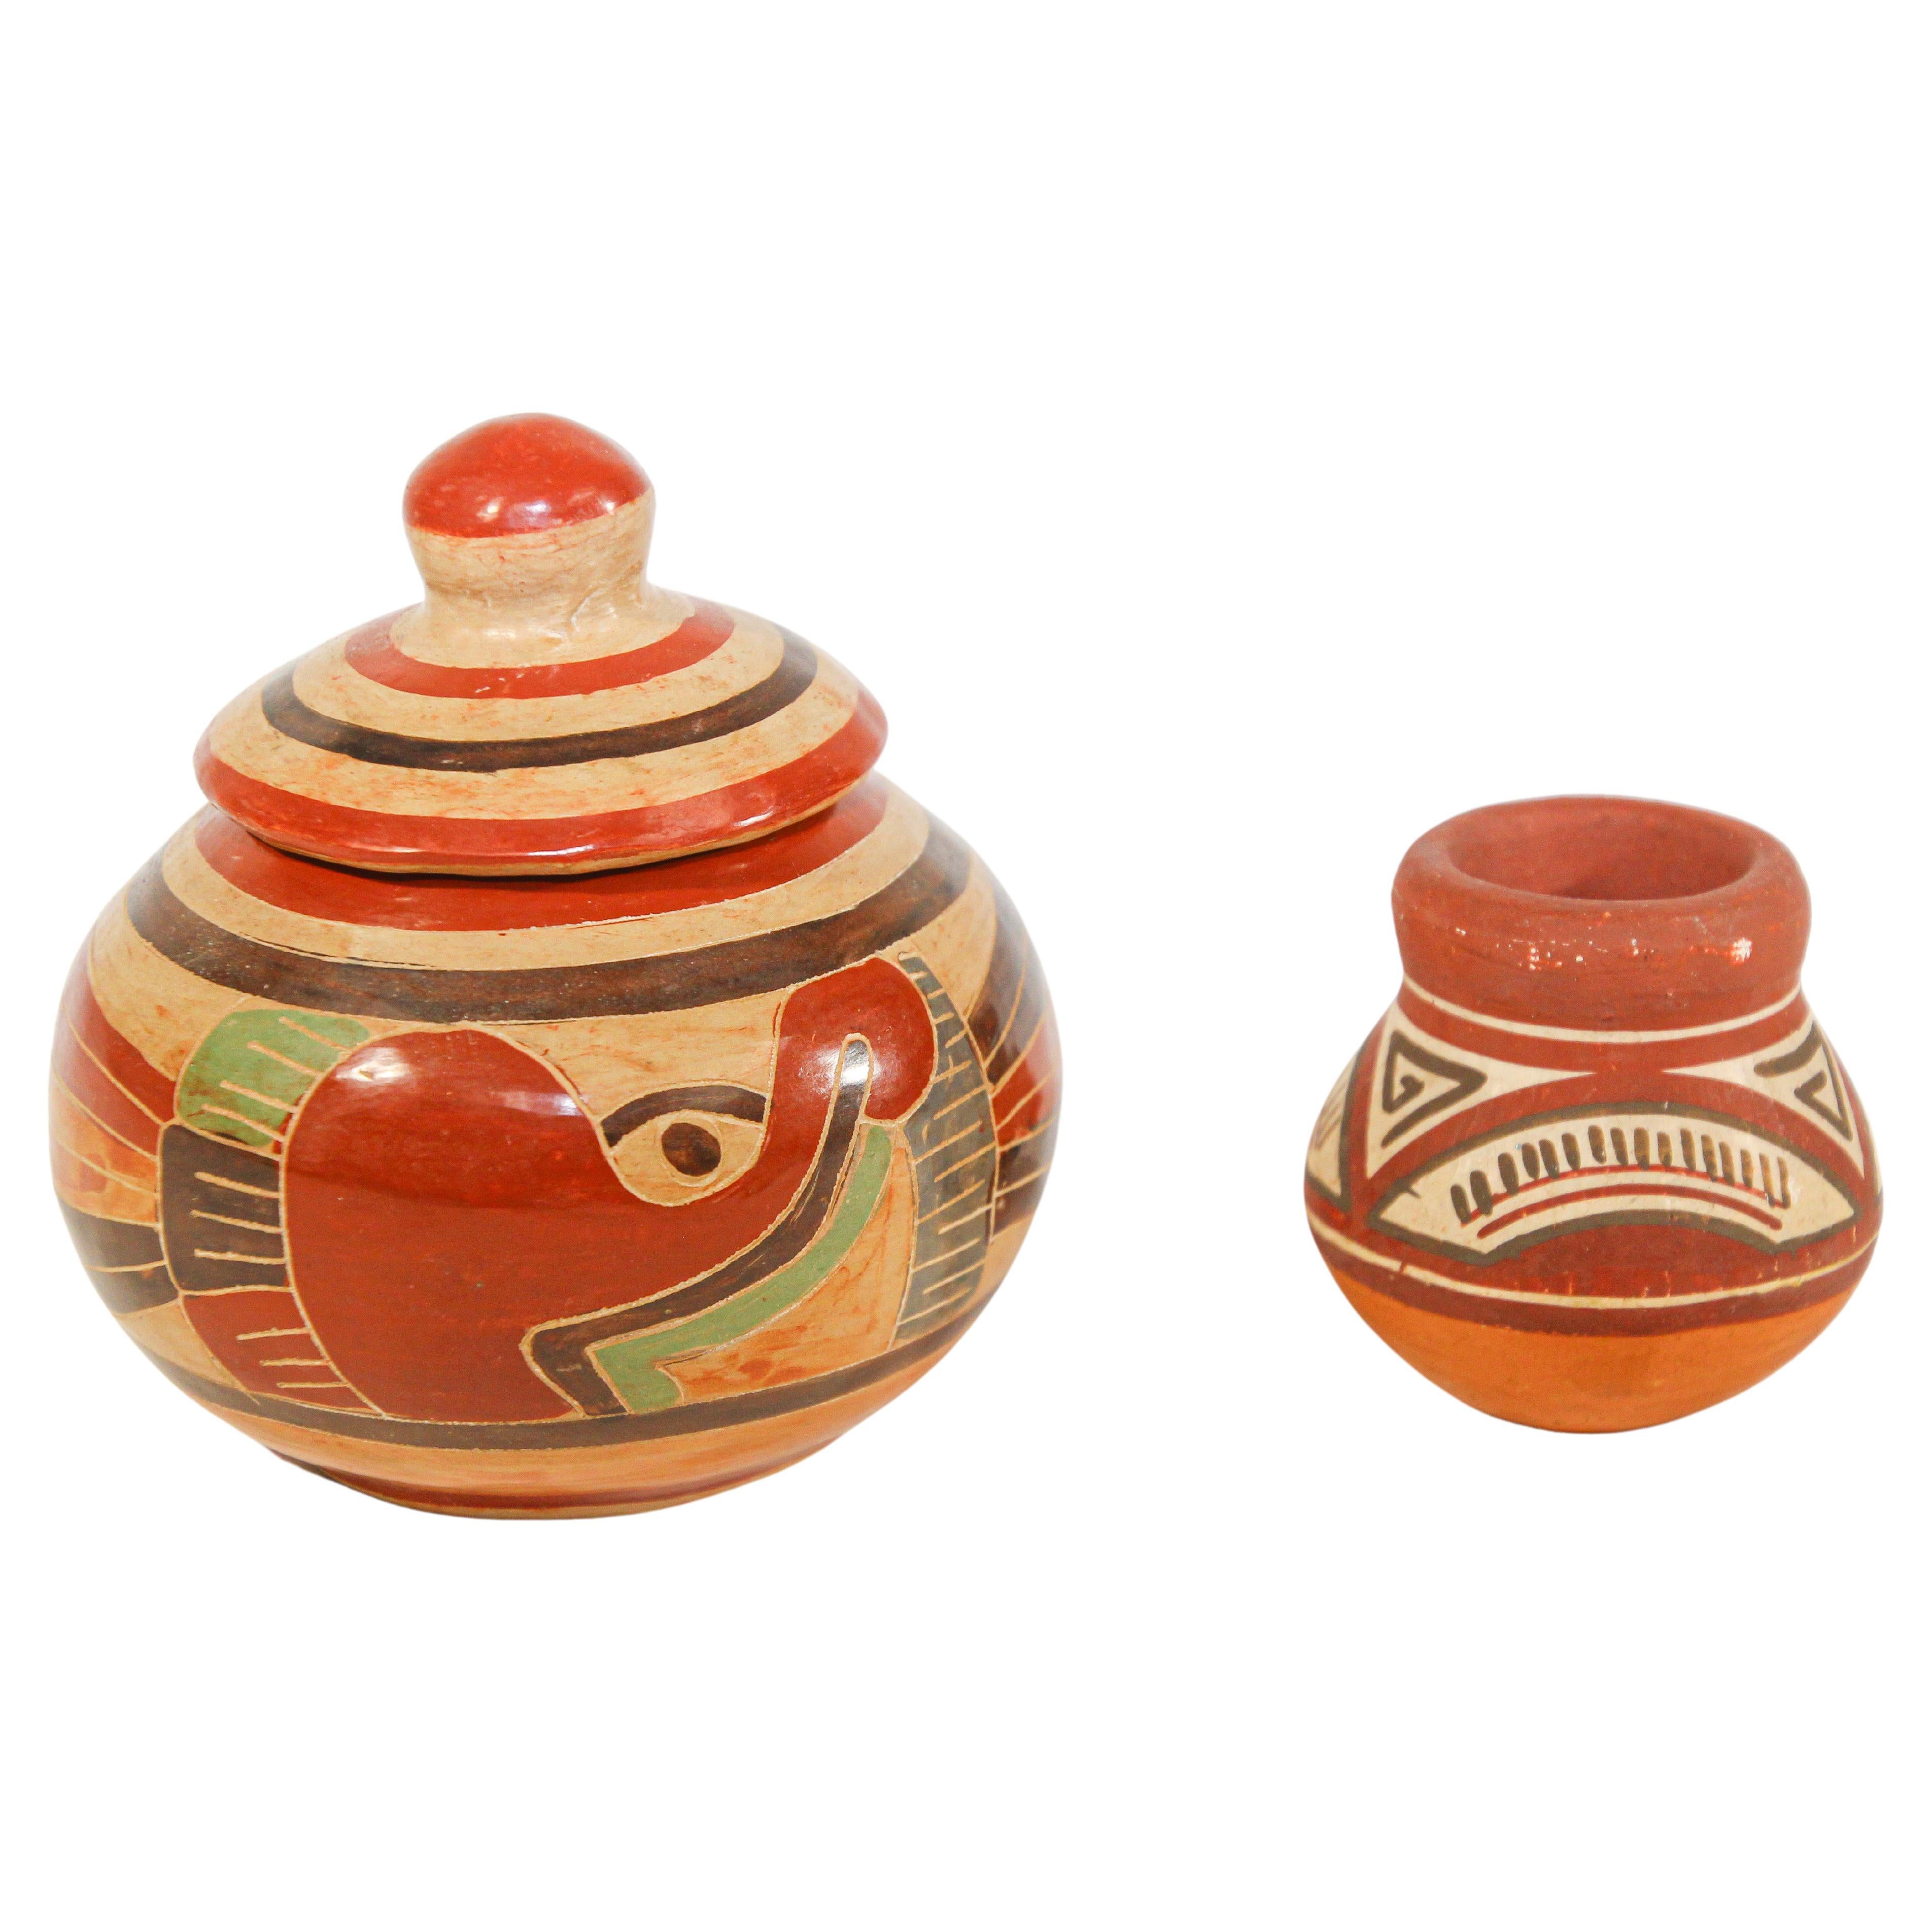 Ensemble de poteries mexicaines vintage Mata Ortiz de style mexicain